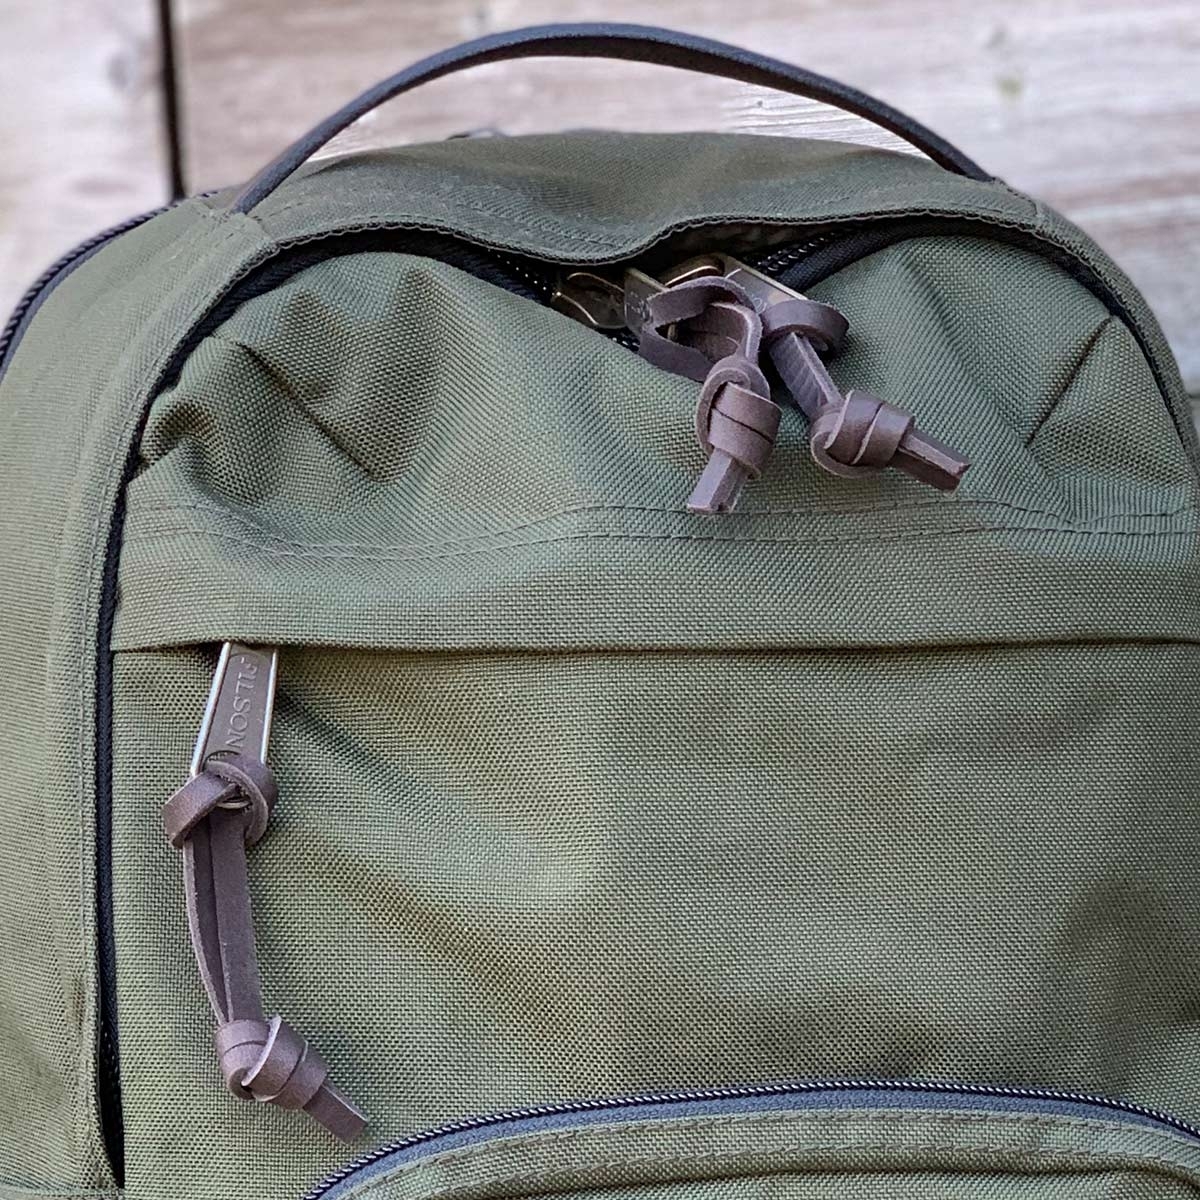 Filson Dryden Backpack Otter Green, tough, lightweight backpack